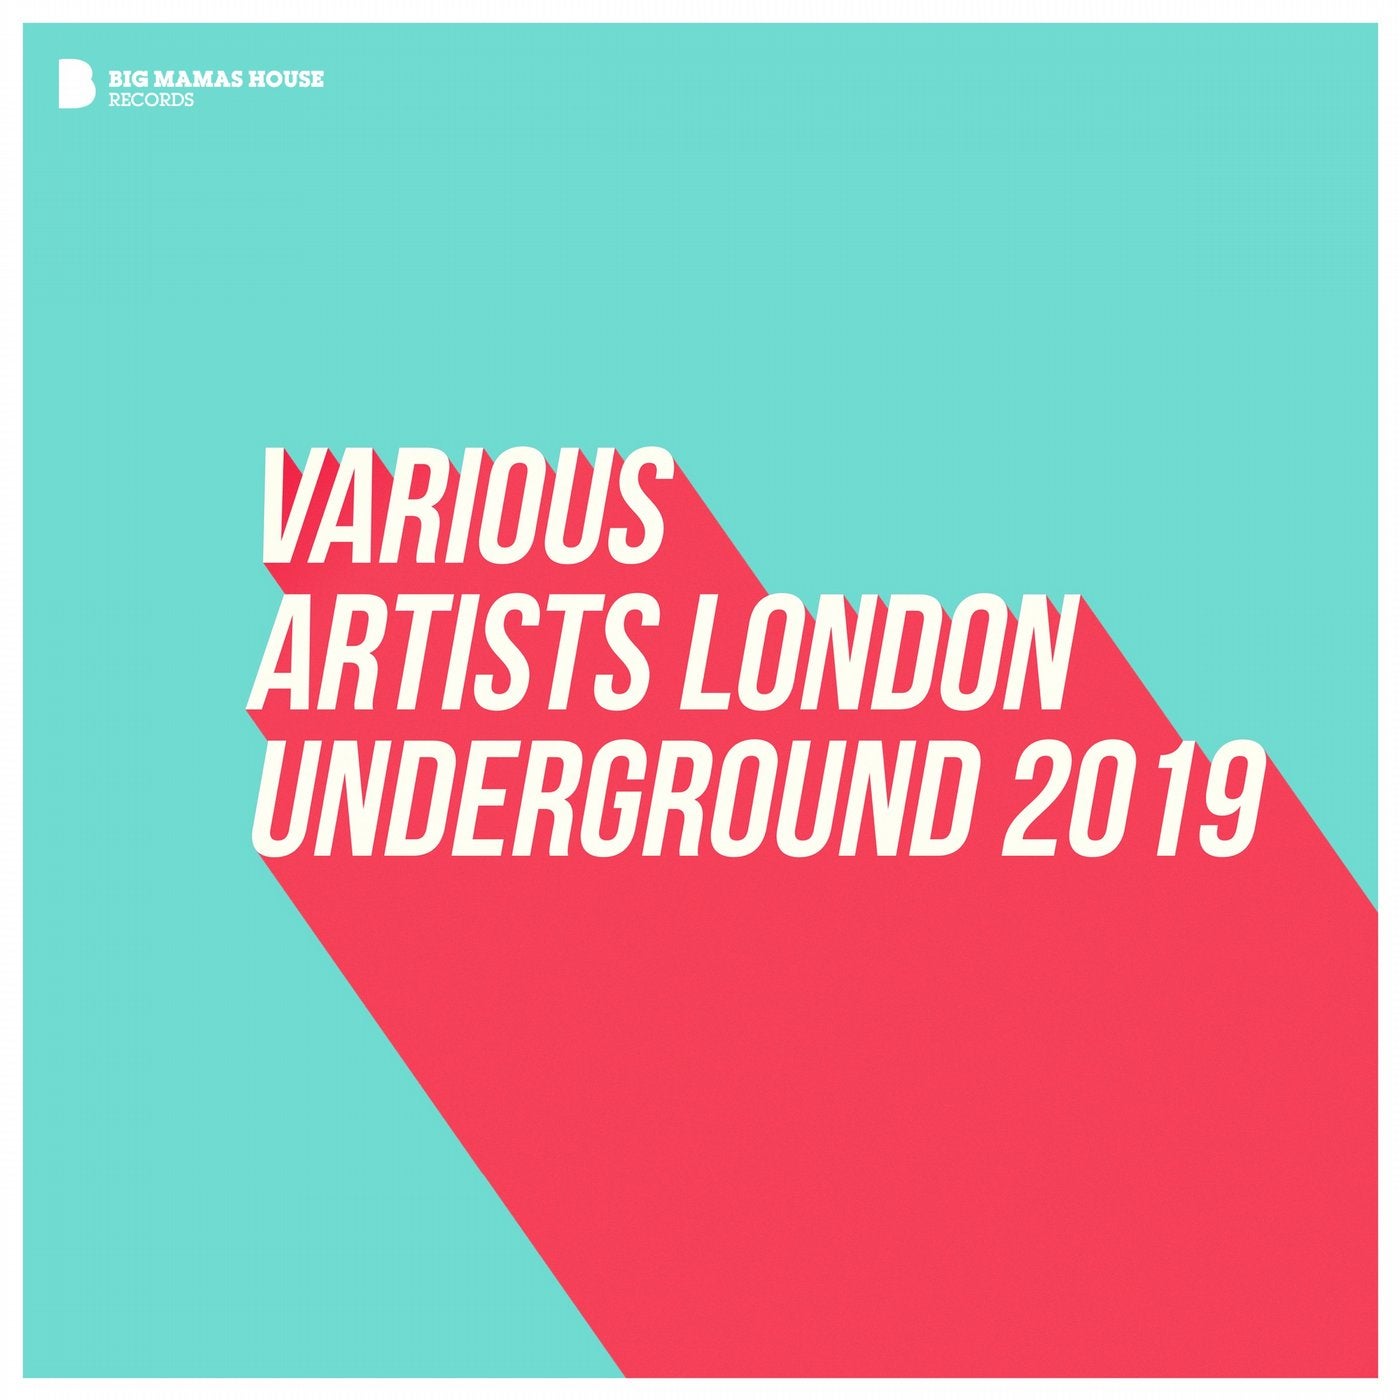 London Underground 2019